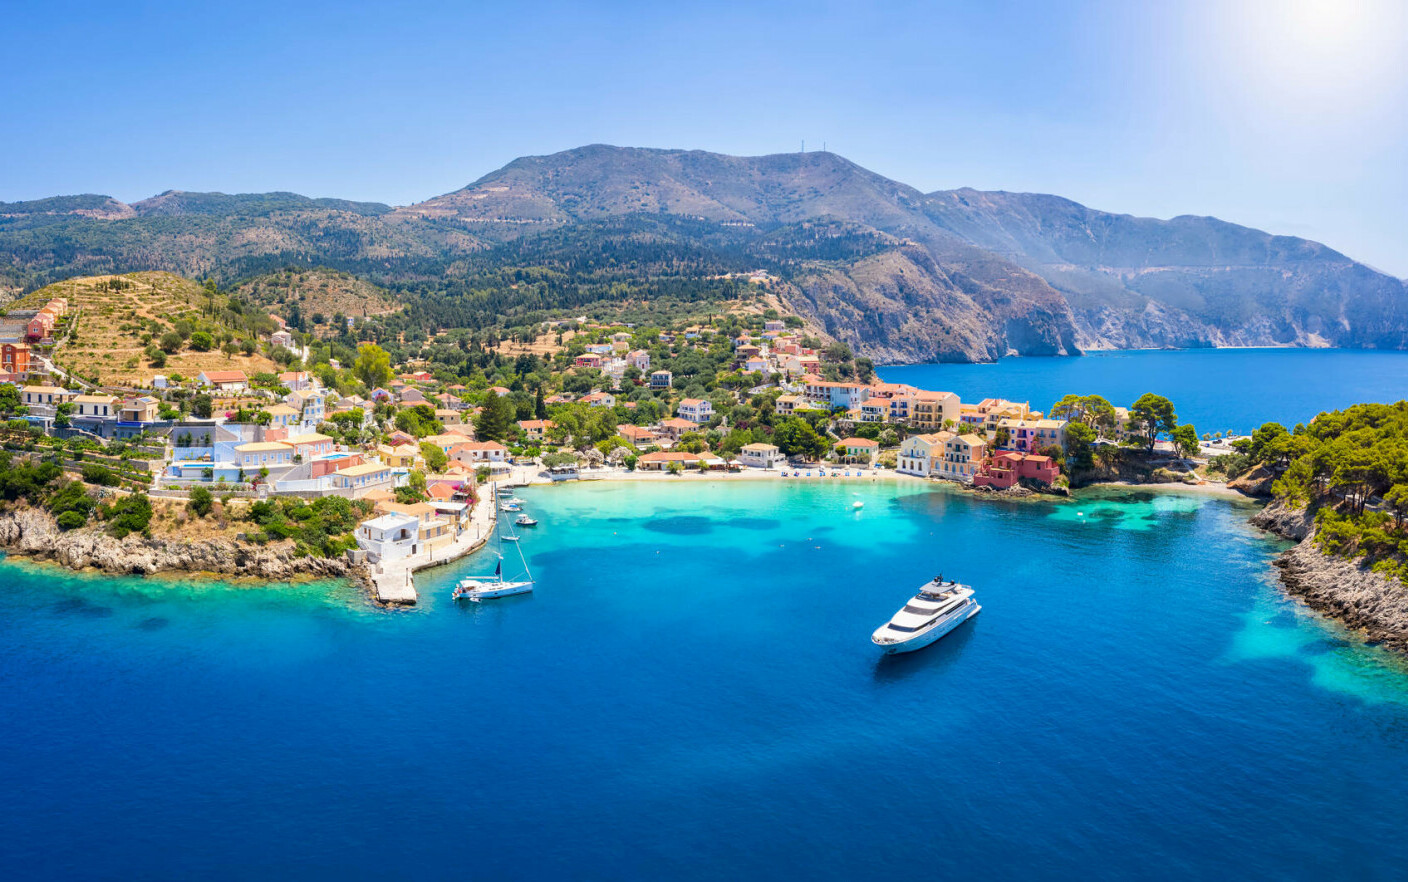 Τα πιο εντυπωσιακά ξενοδοχεία με ιδιωτικές πισίνες στην Ελλάδα.  Όλα όσα πρέπει να ξέρετε για αυτούς